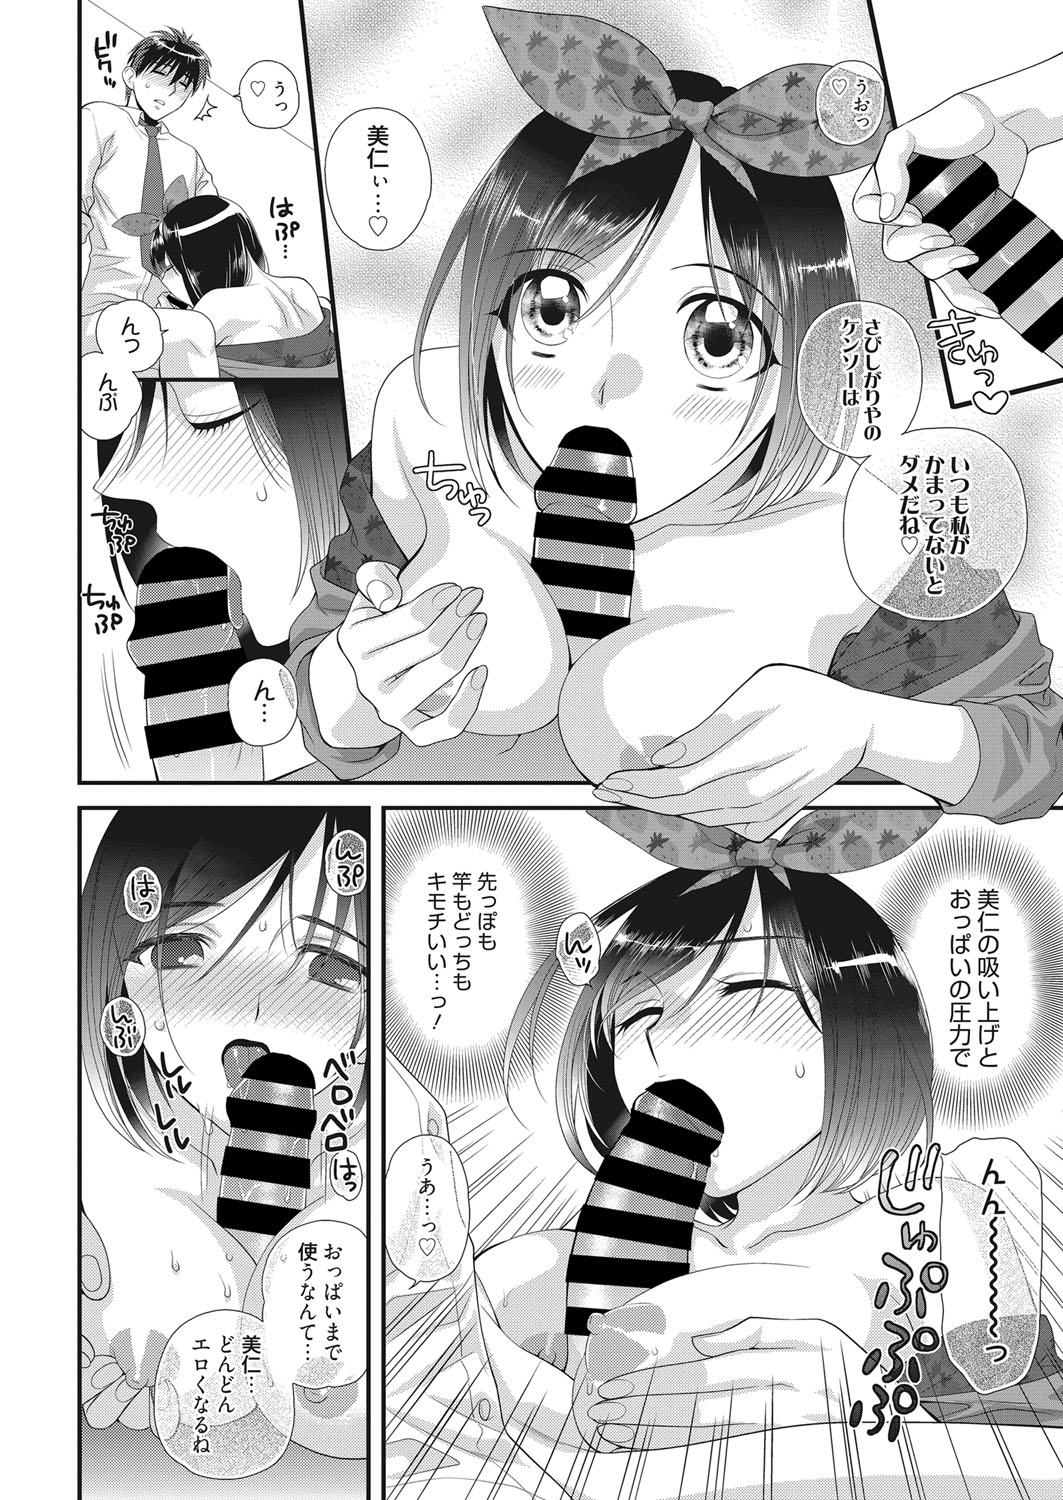 web 漫画ばんがいち Vol.22